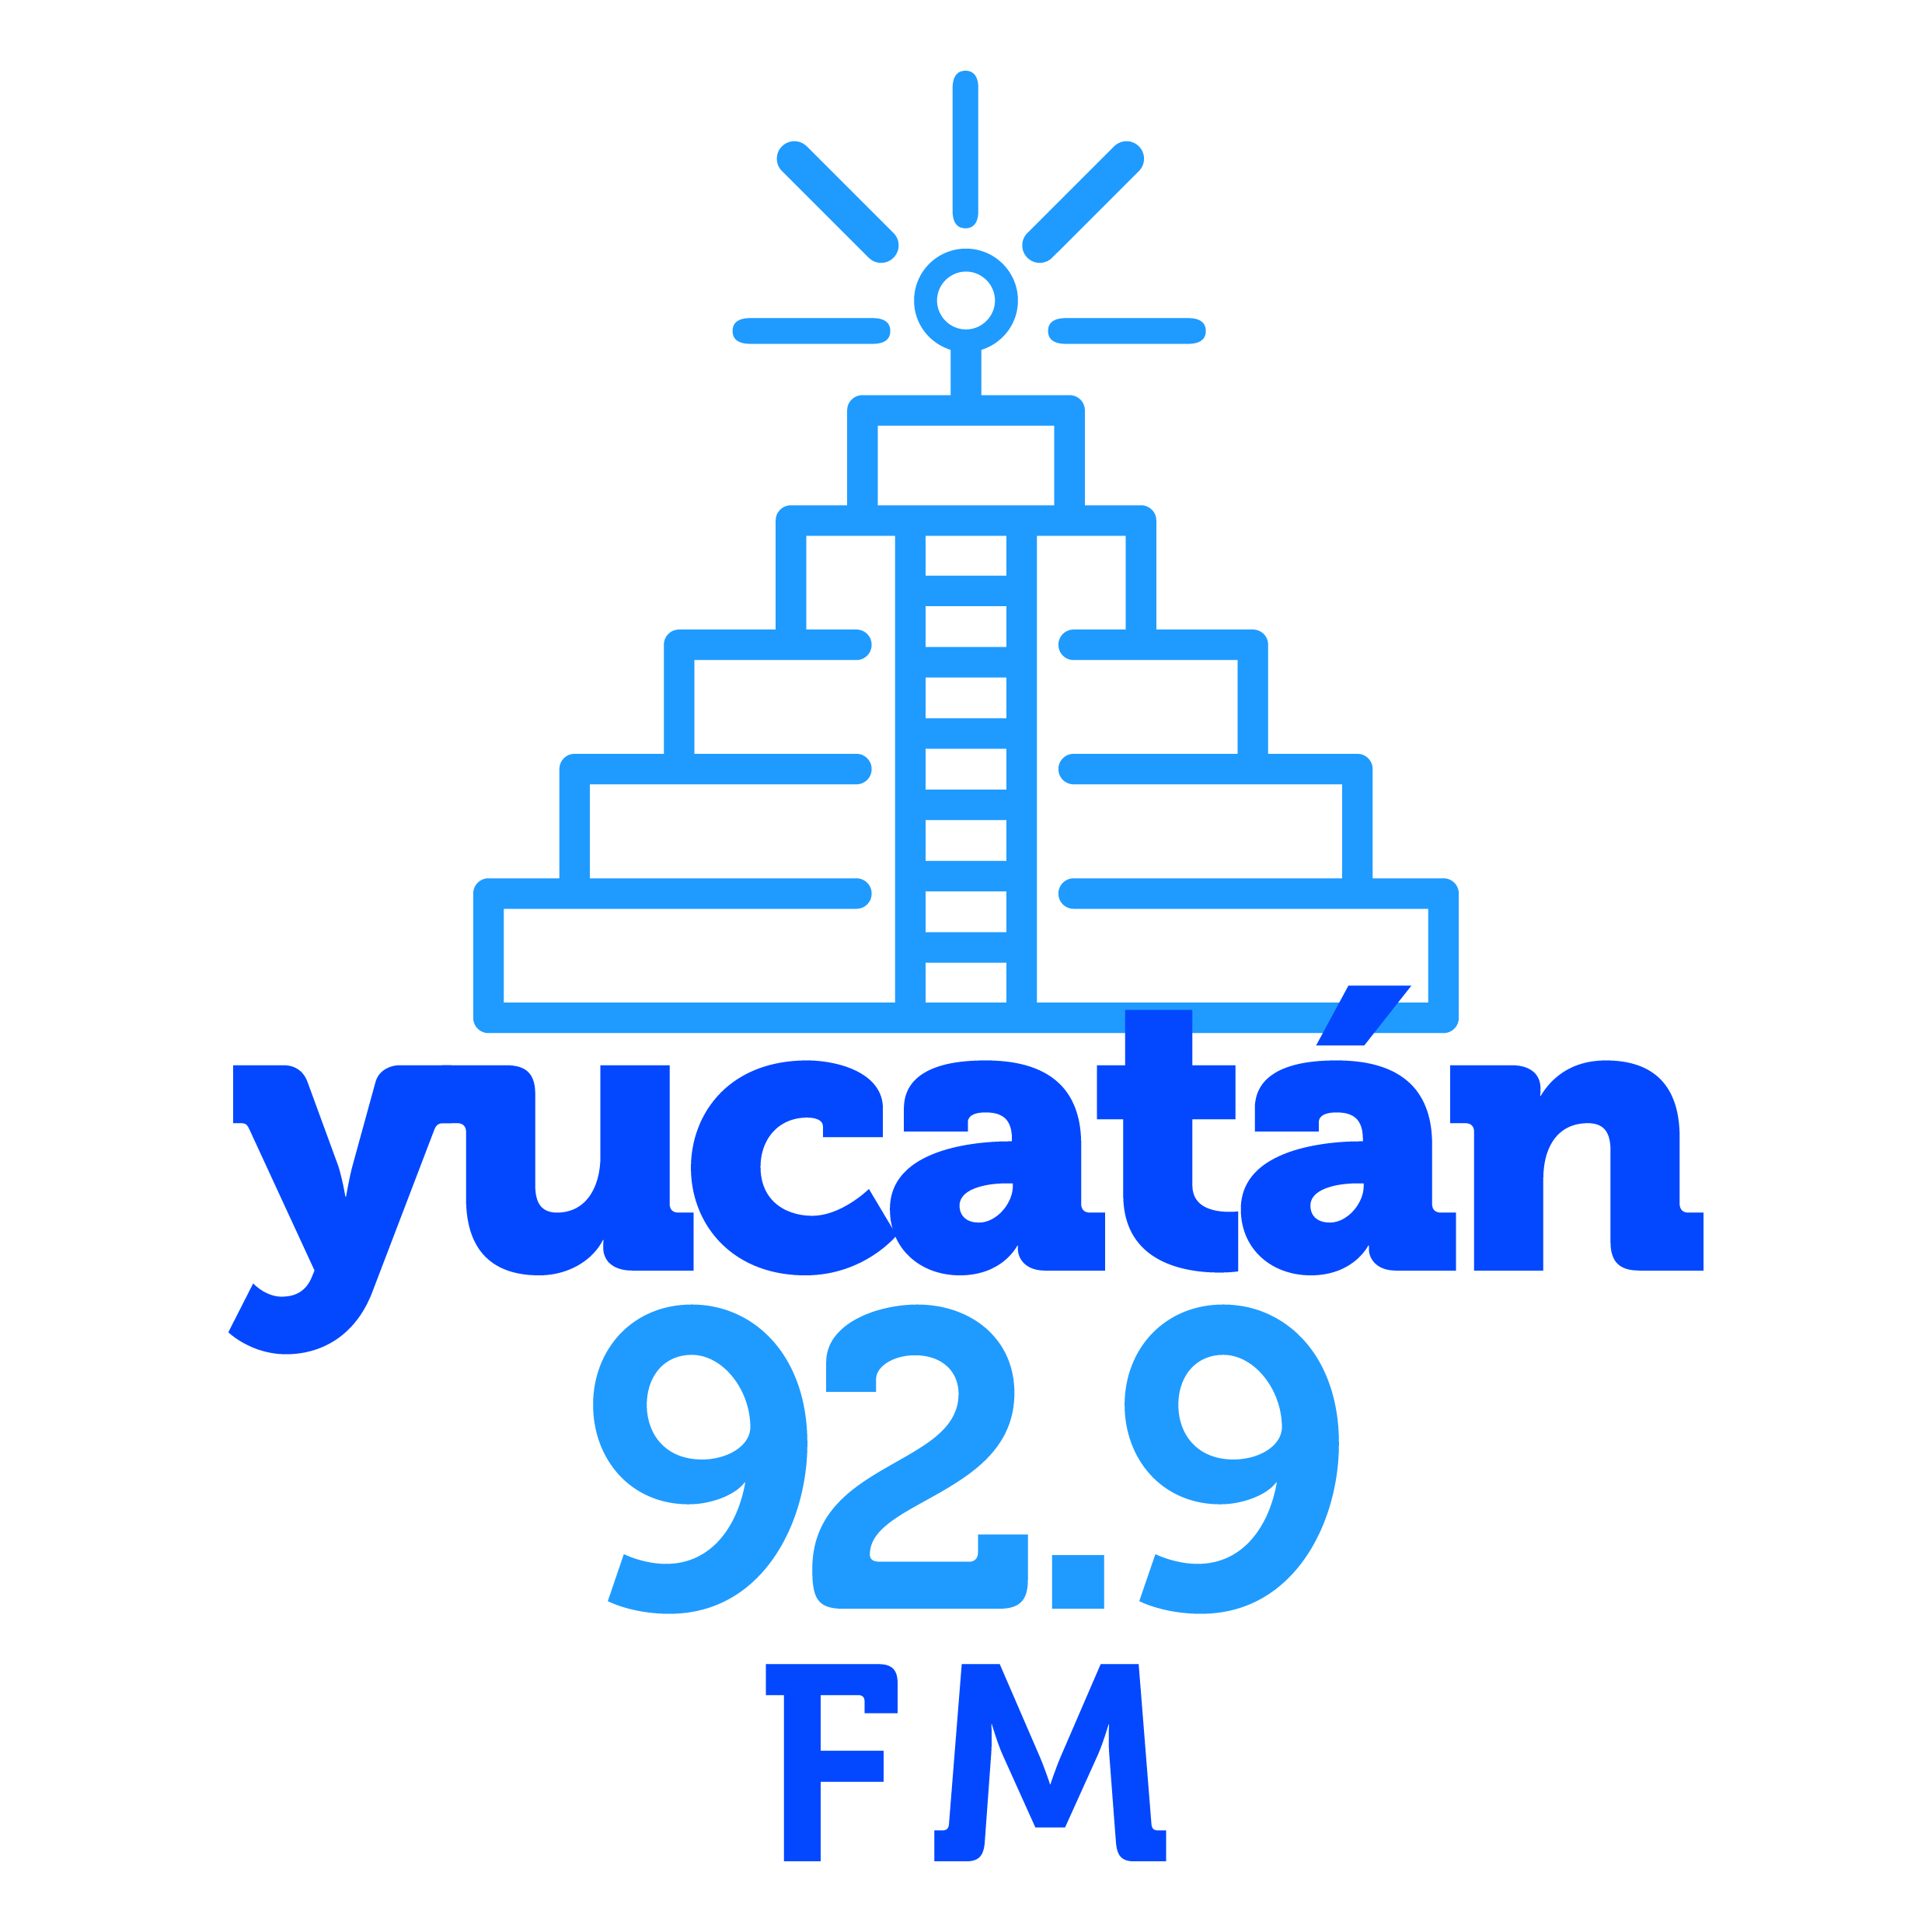 Cultura Digital, por el 90.9 de FM en Yucatán